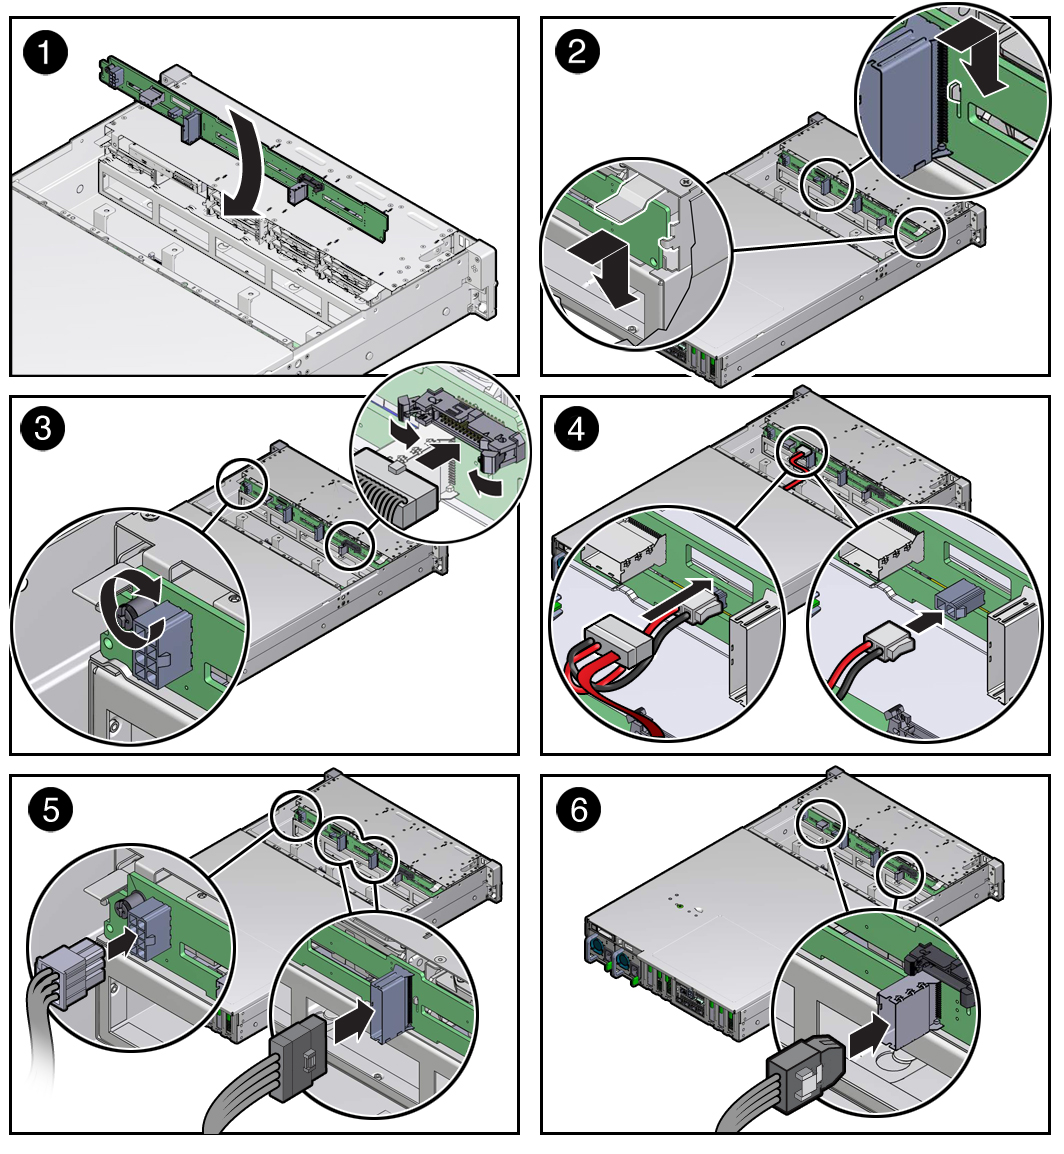 image:ドライブバックプレーンを取り付ける方法を示す図。